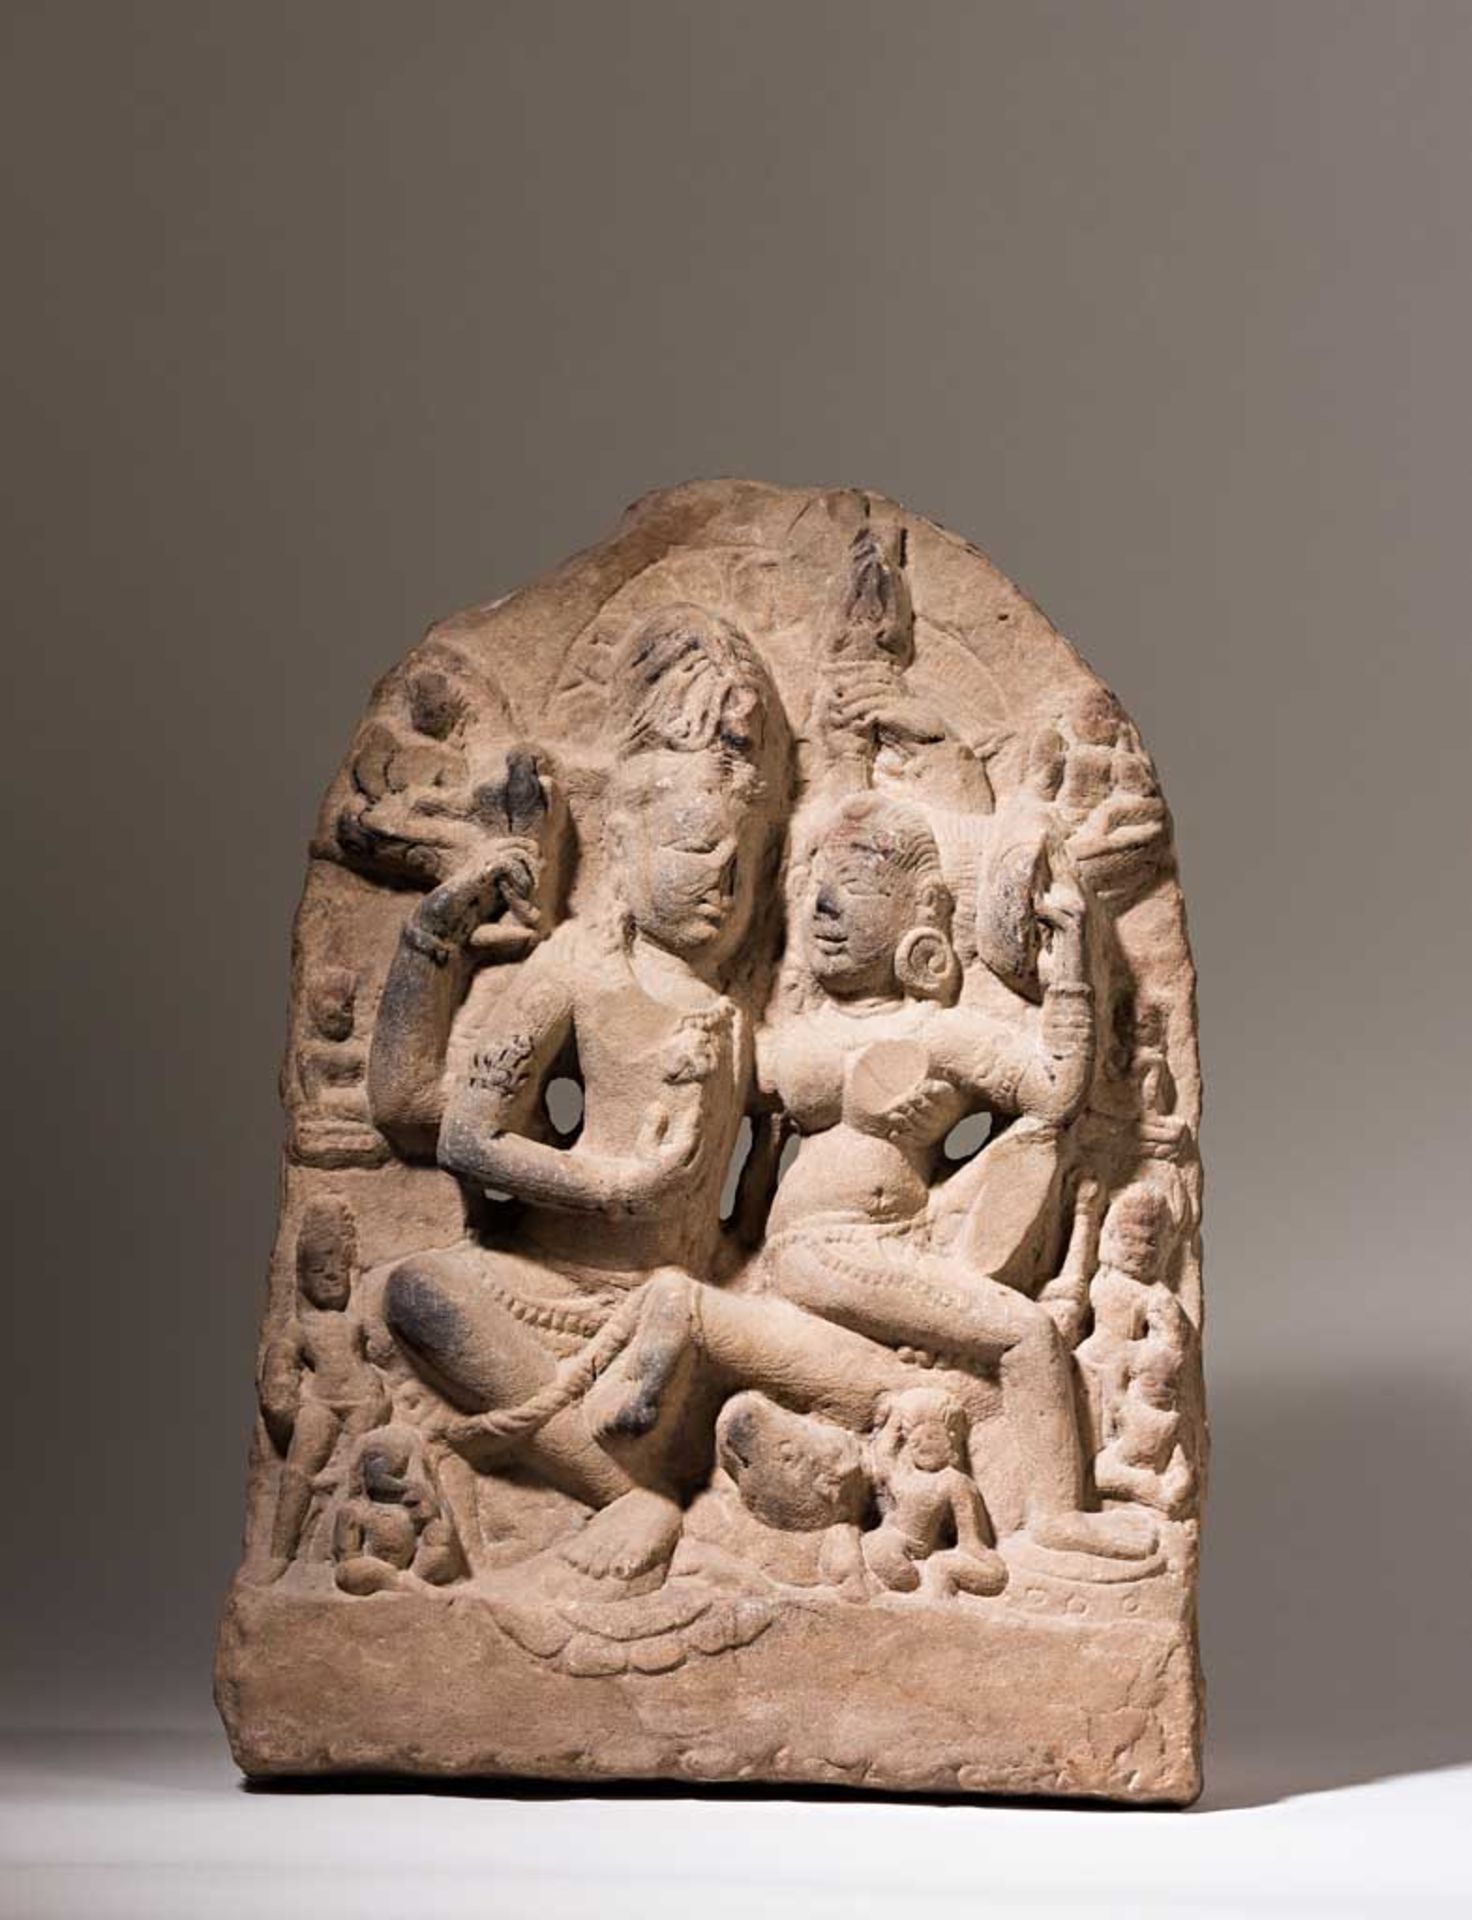 Umamahesvara-Reliefstele. Das göttliche Paar Shiva und Parvati in Umarmung, von zahlreichen